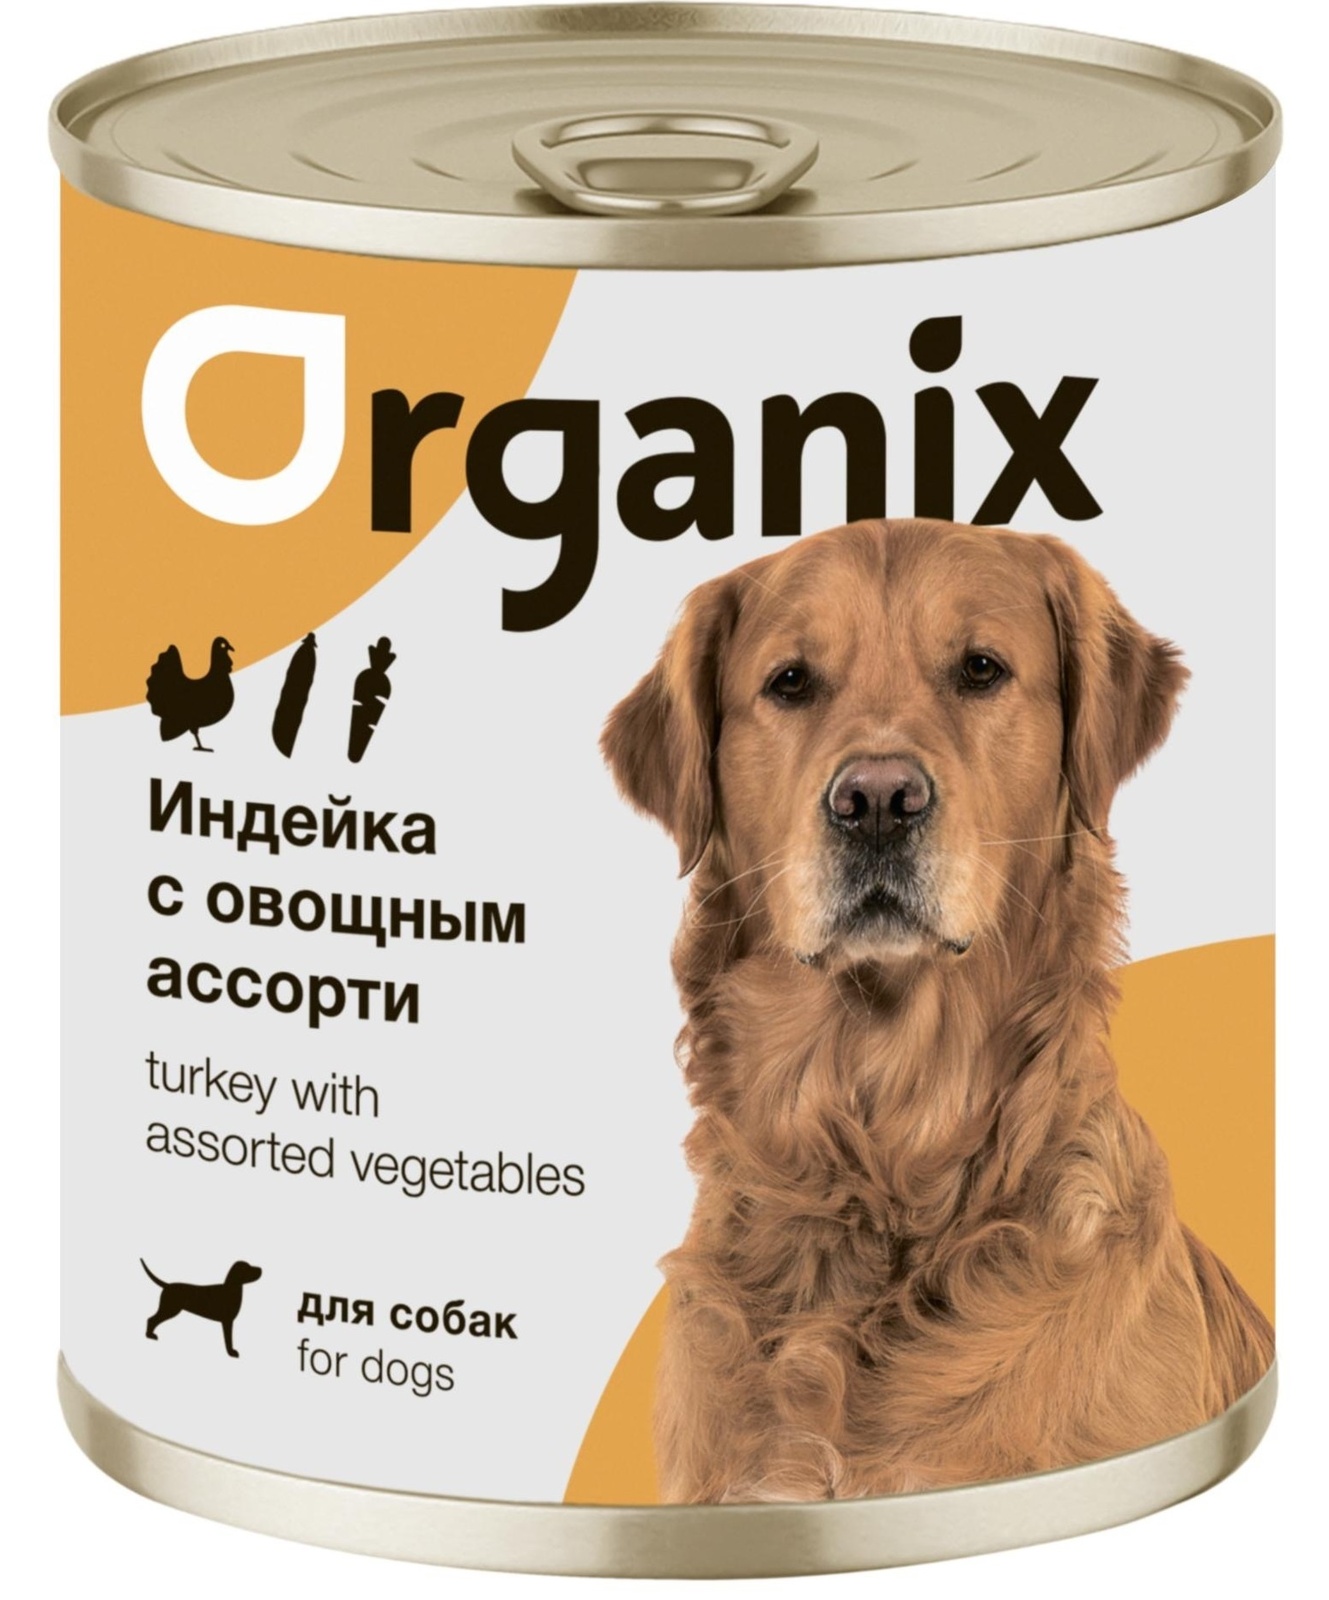 Organix консервы Organix консервы для собак Индейка с овощным ассорти (750 г) organix консервы organix консервы для собак кролик с зеленым горошком 750 г